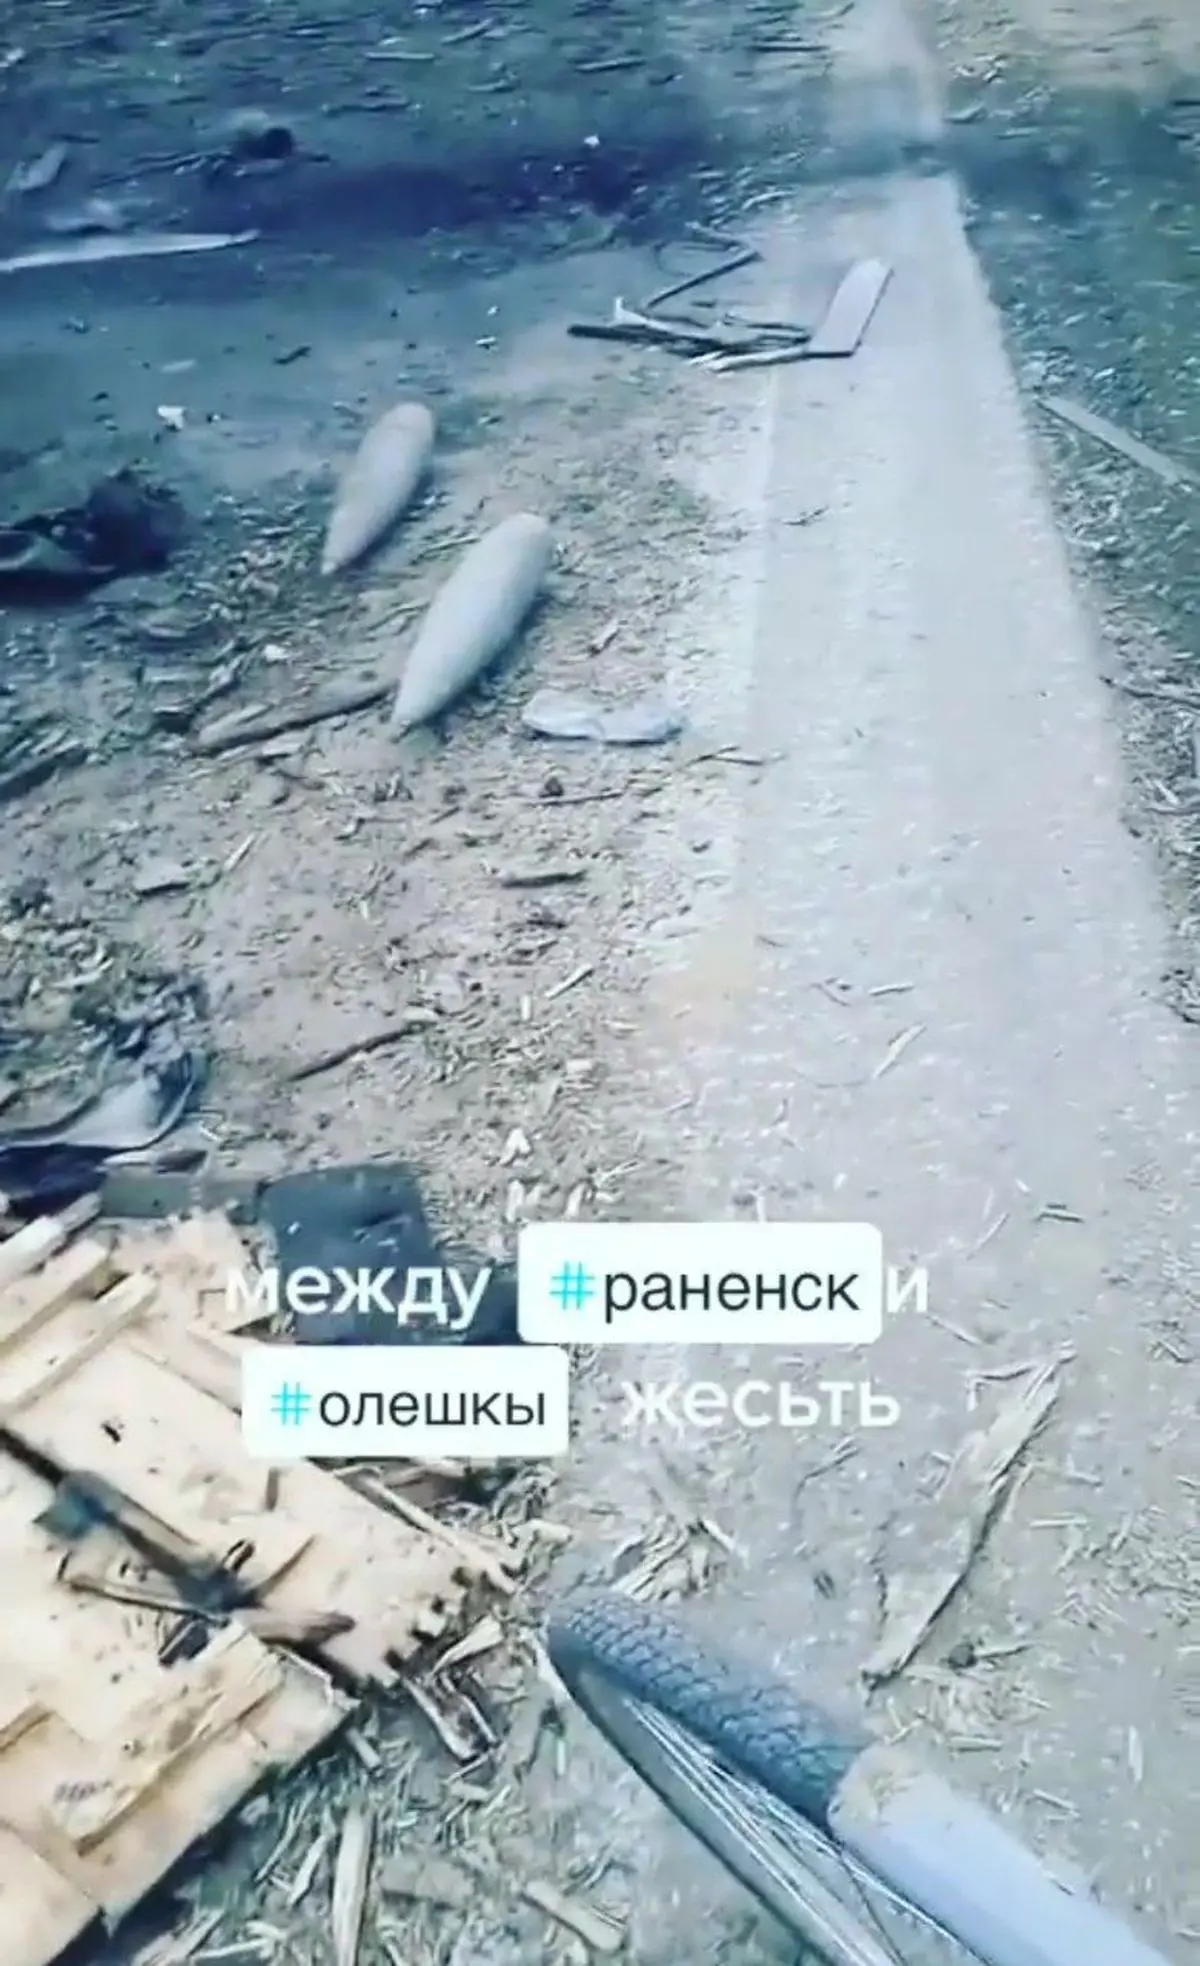 انهدام کامل ستون نظامی متعلق به ارتش روسیه در جنوب اوکراین+ویدئو